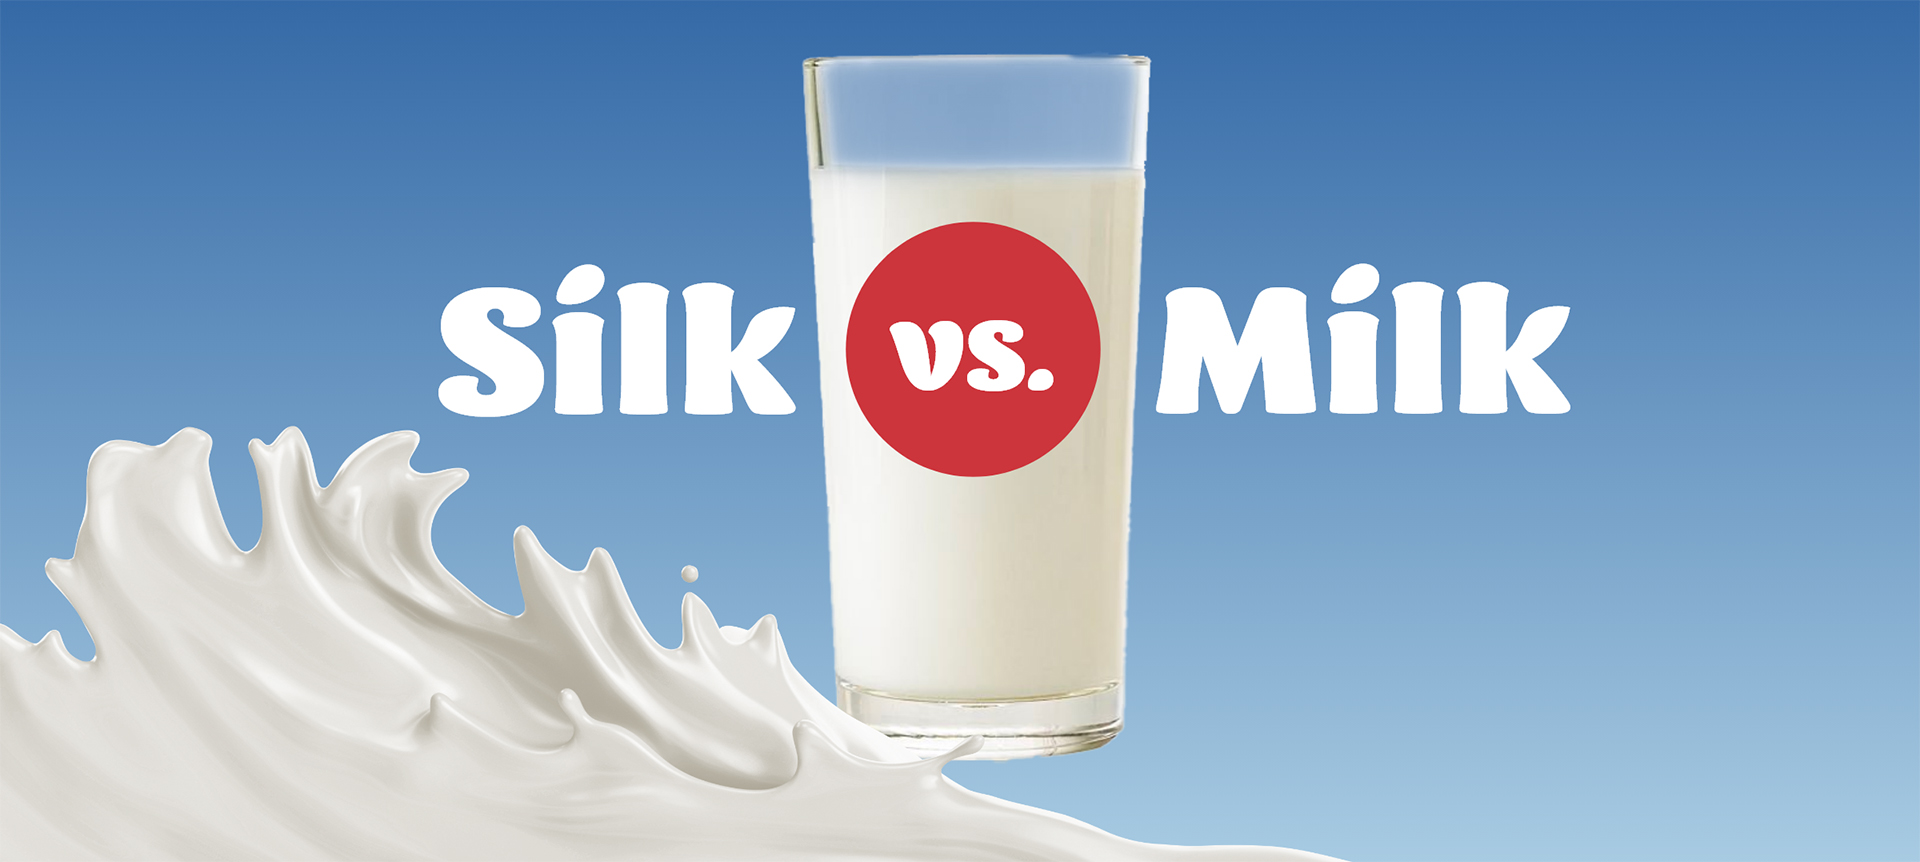 Silk vs Milk